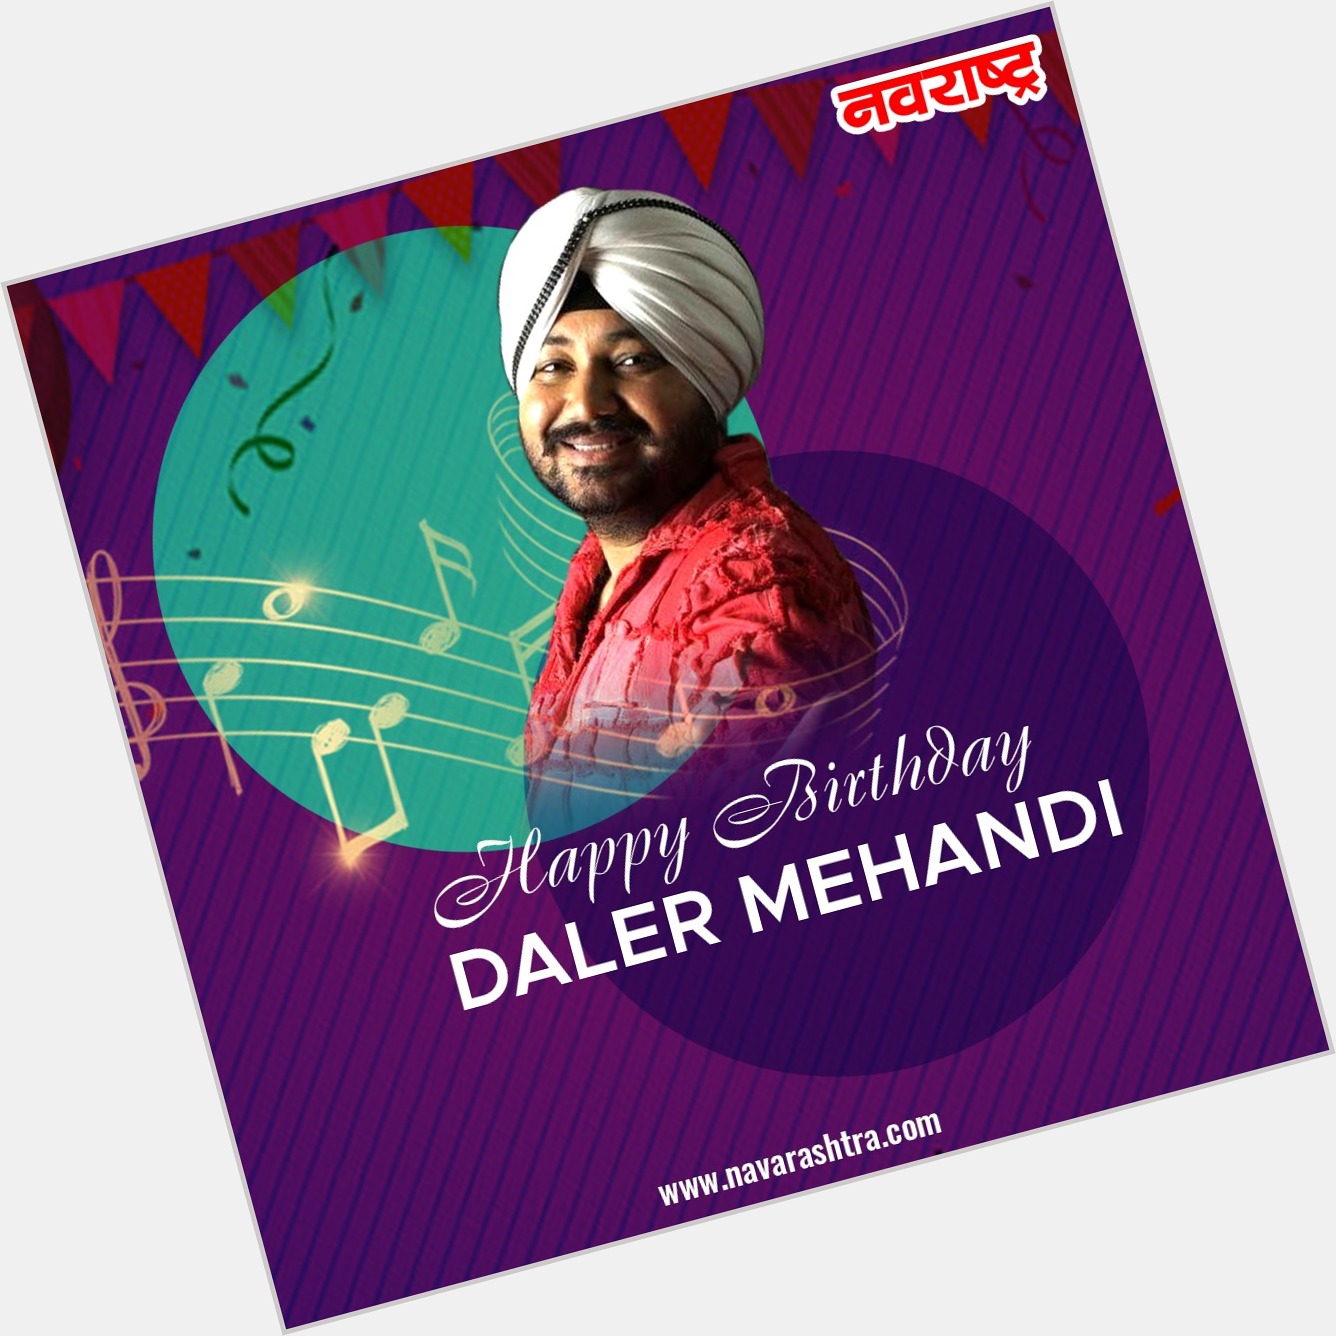  Wishes him, Happy Birthday to Singer Daler Mehndi   